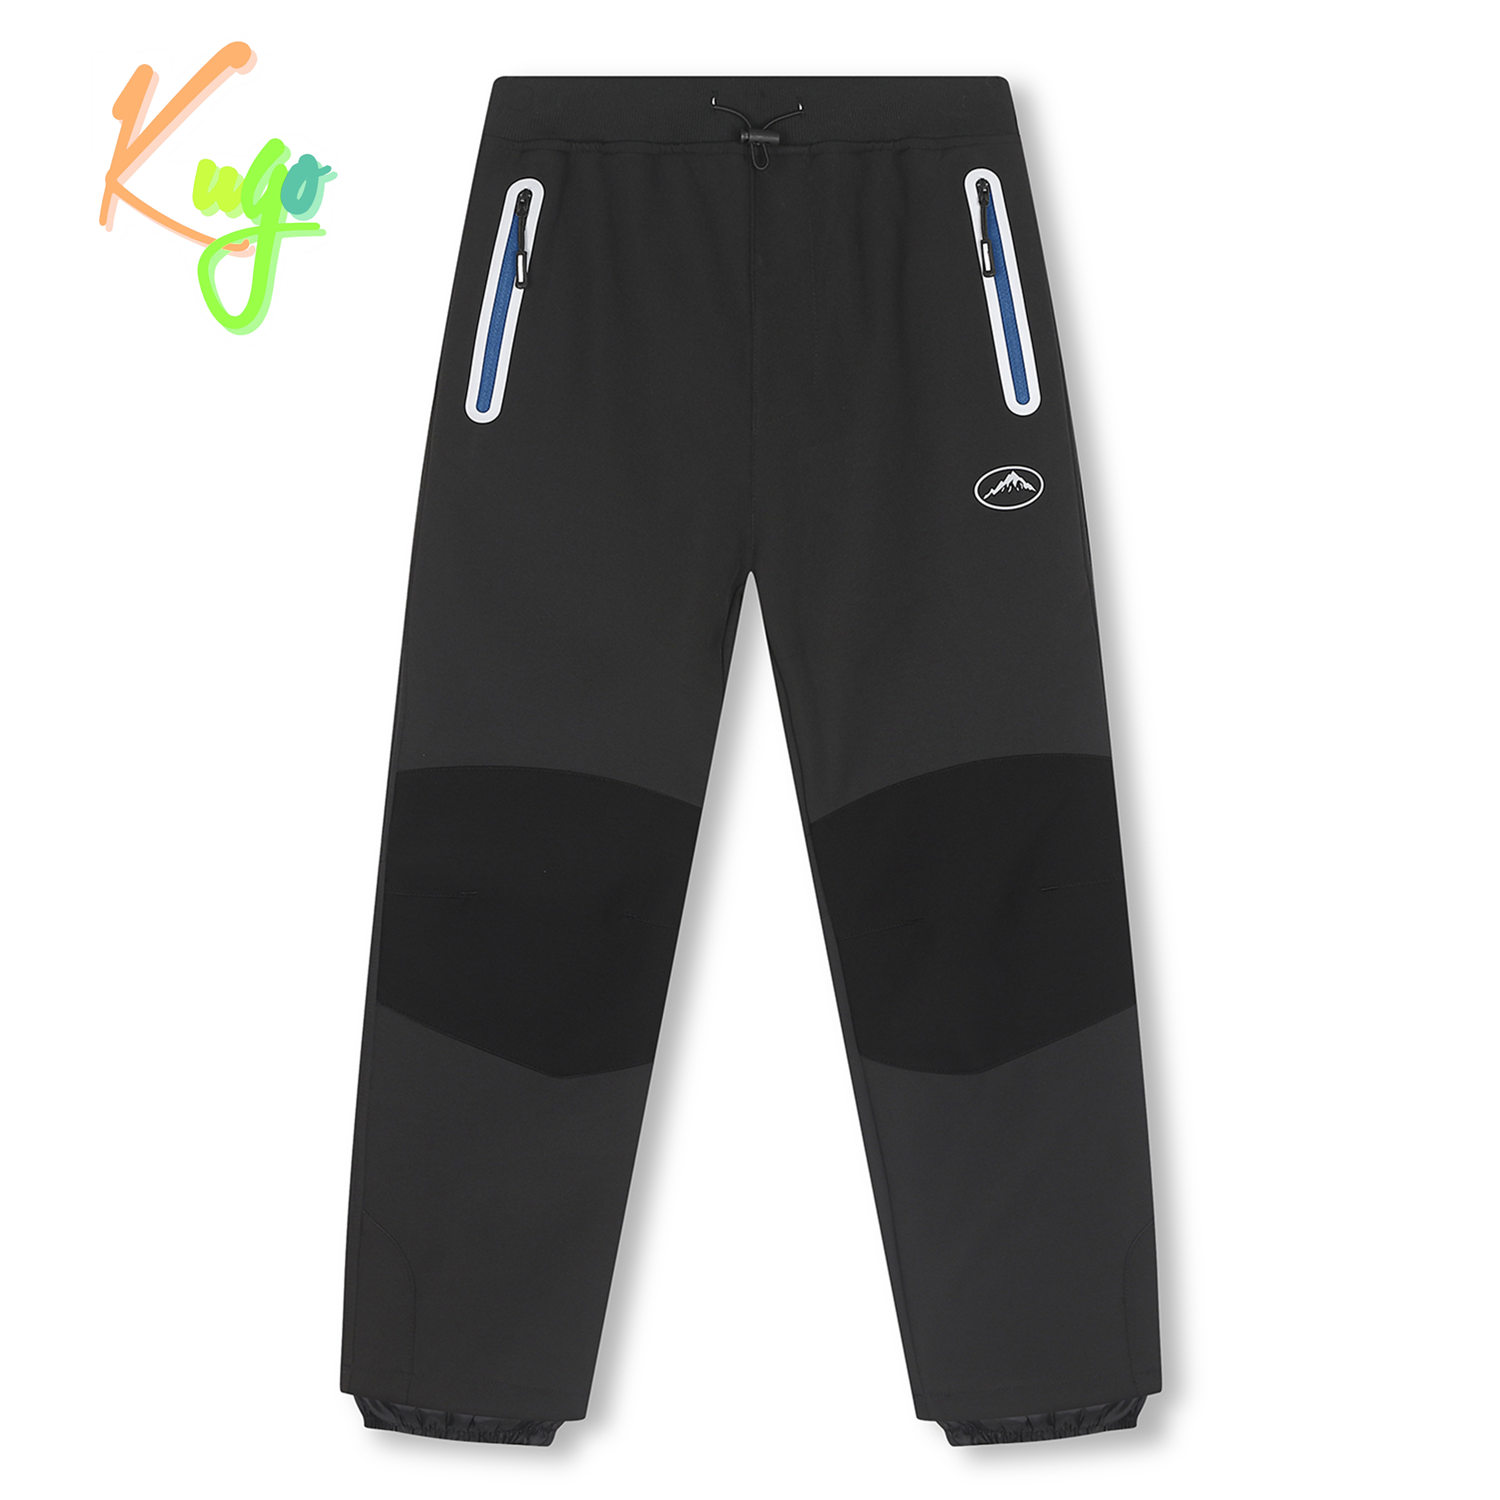 Chlapecké softshellové kalhoty, zateplené - KUGO HK2519, tmavě šedá / modré zipy Barva: Šedá tmavě, Velikost: 146